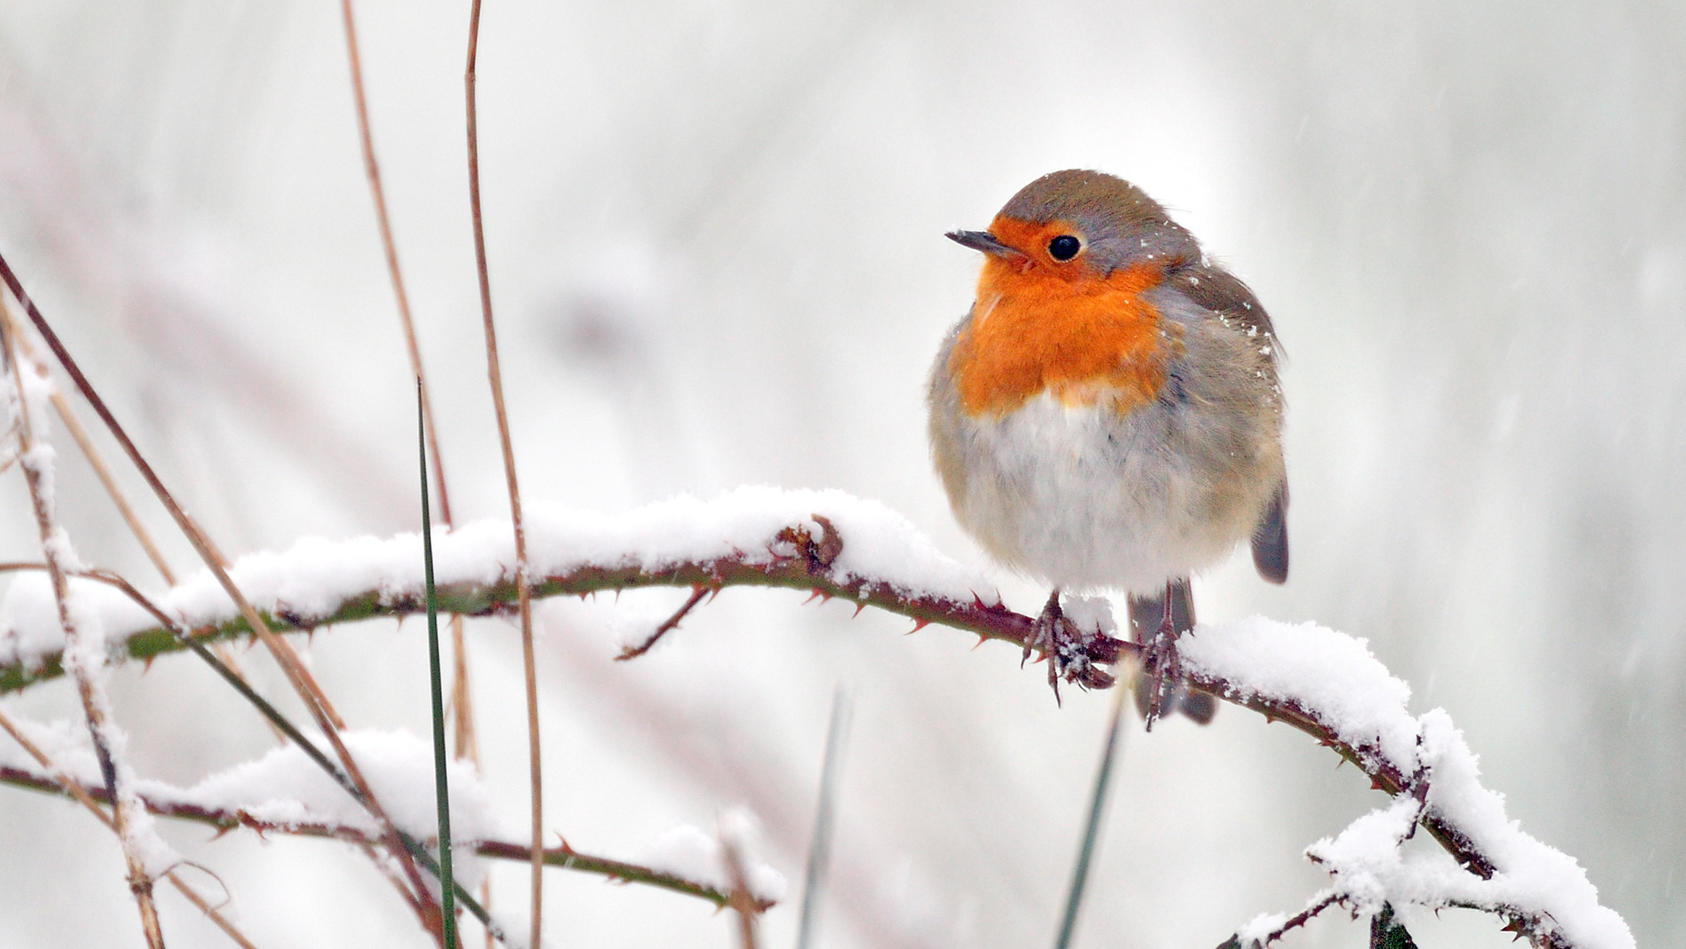 Winter-Wetter: Auch Tiere sind geteilter Meinung über Schnee